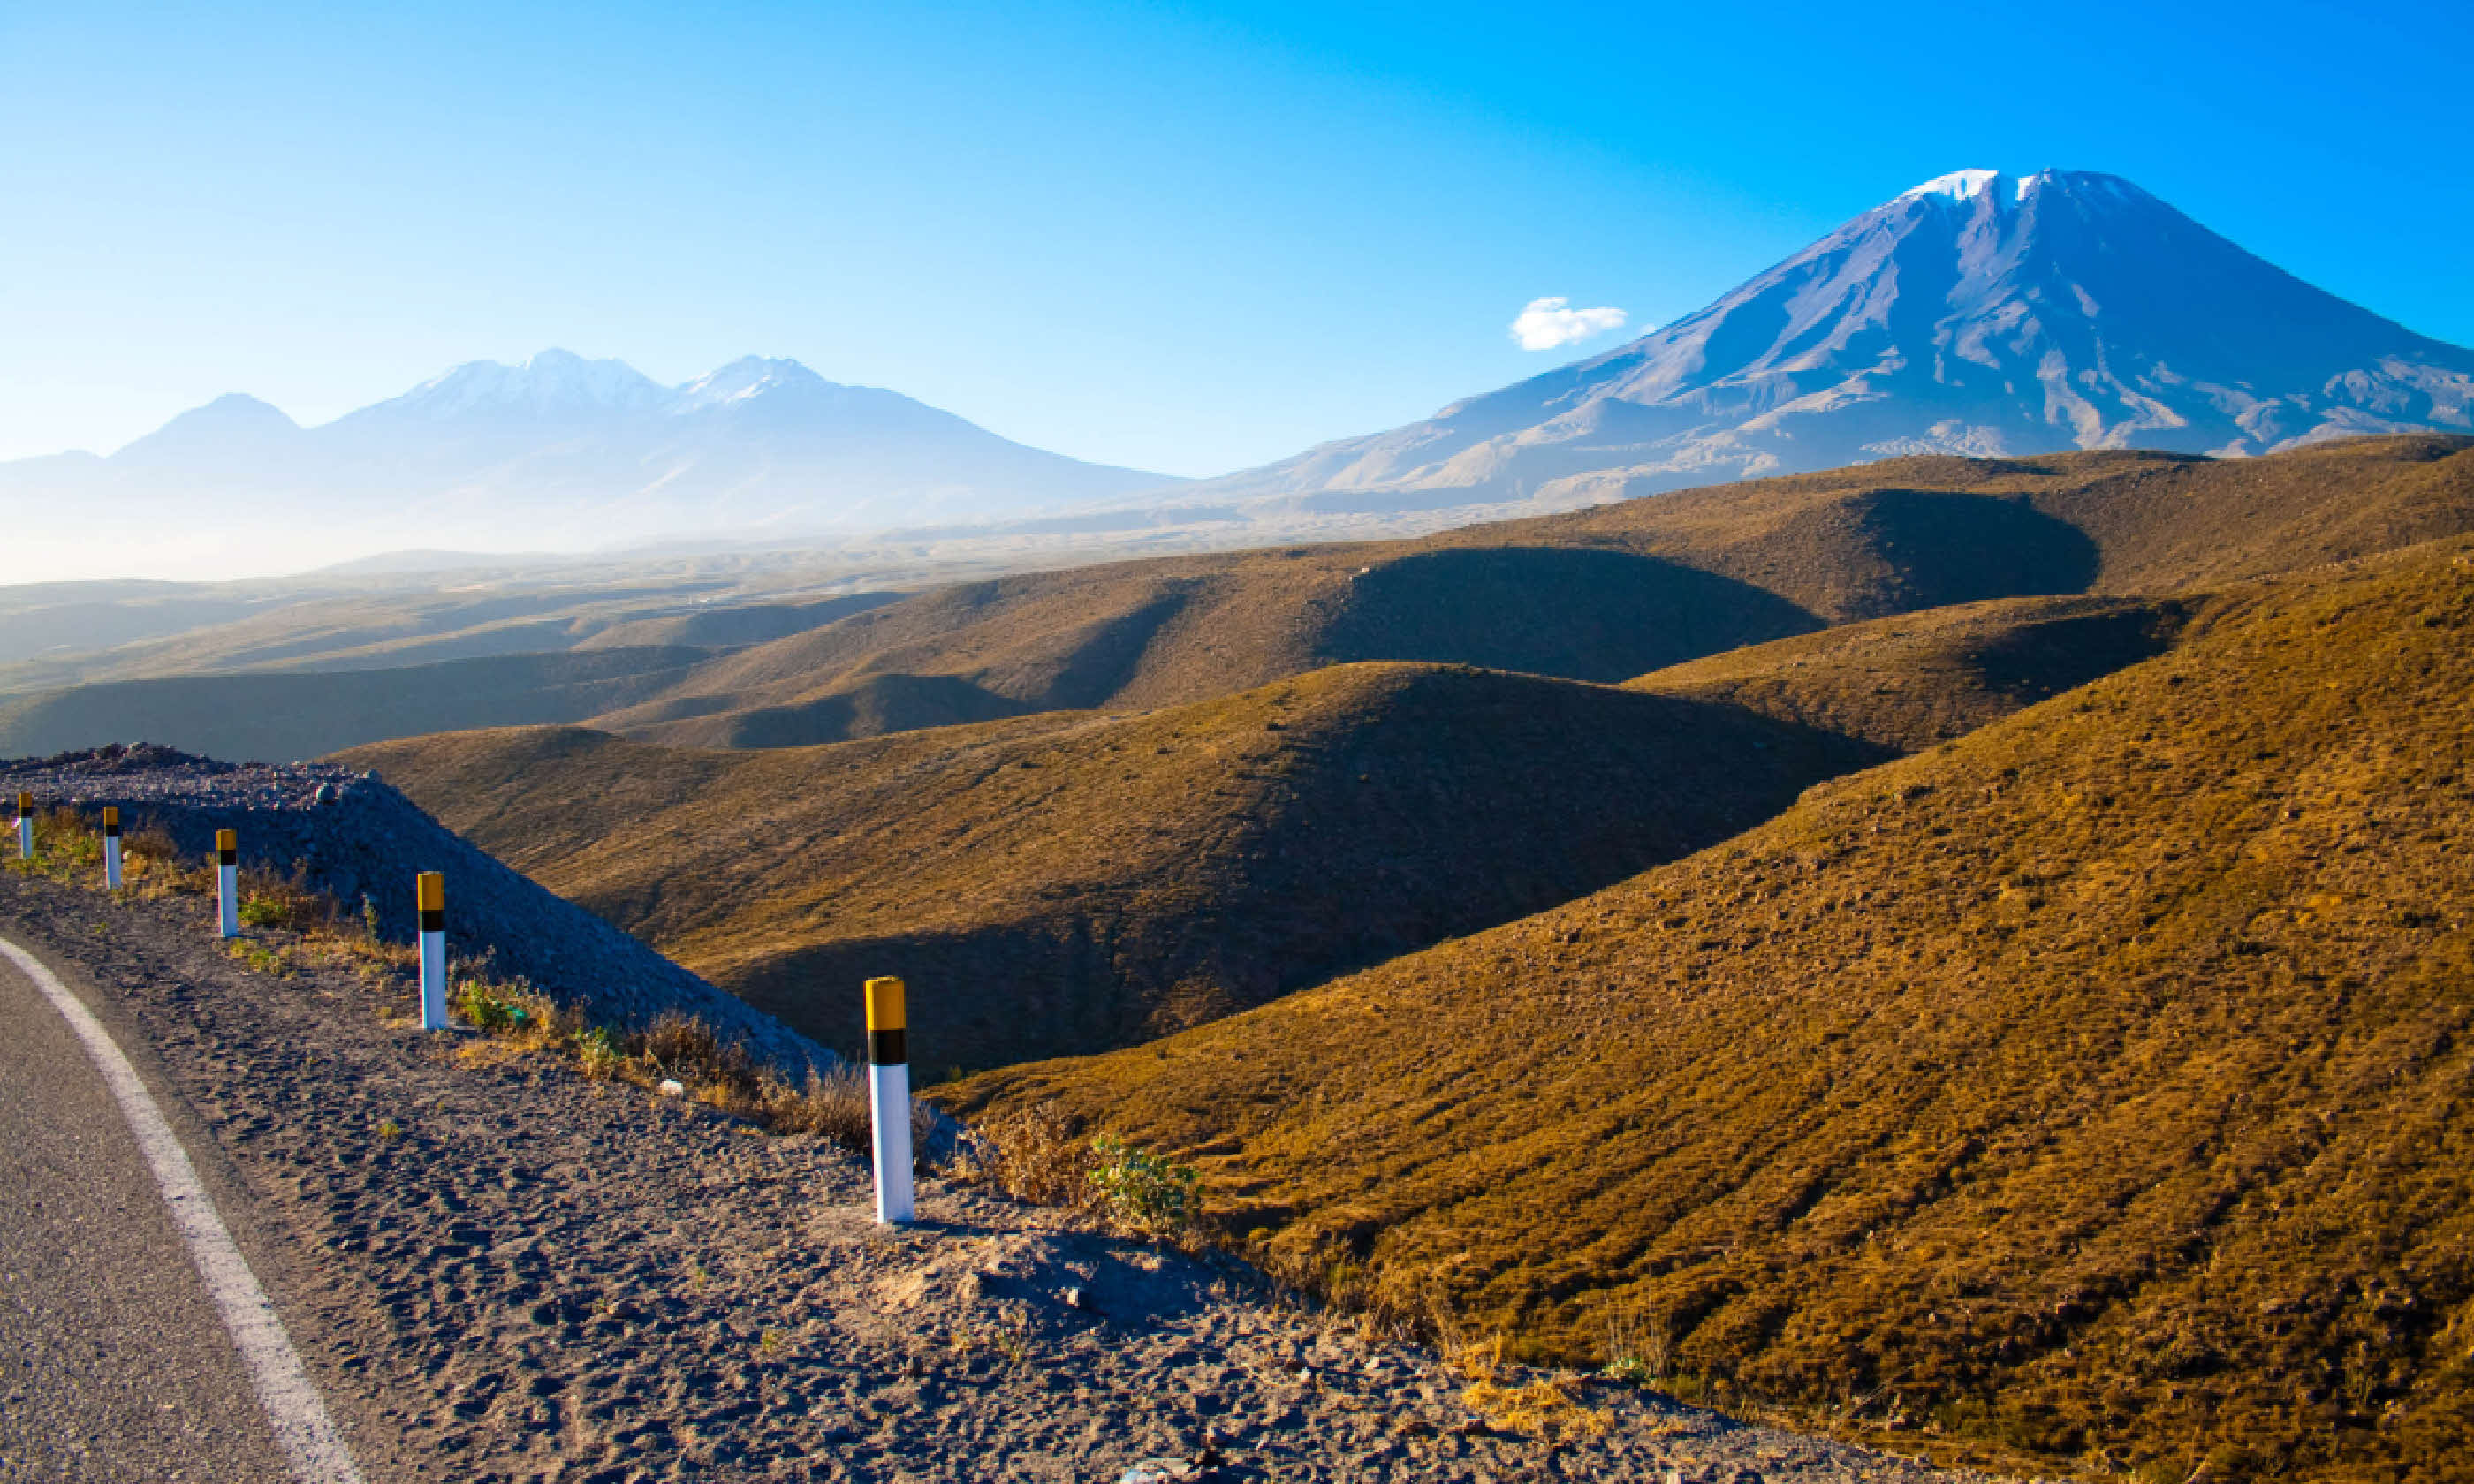 Volcano El Misti (Shutterstock)